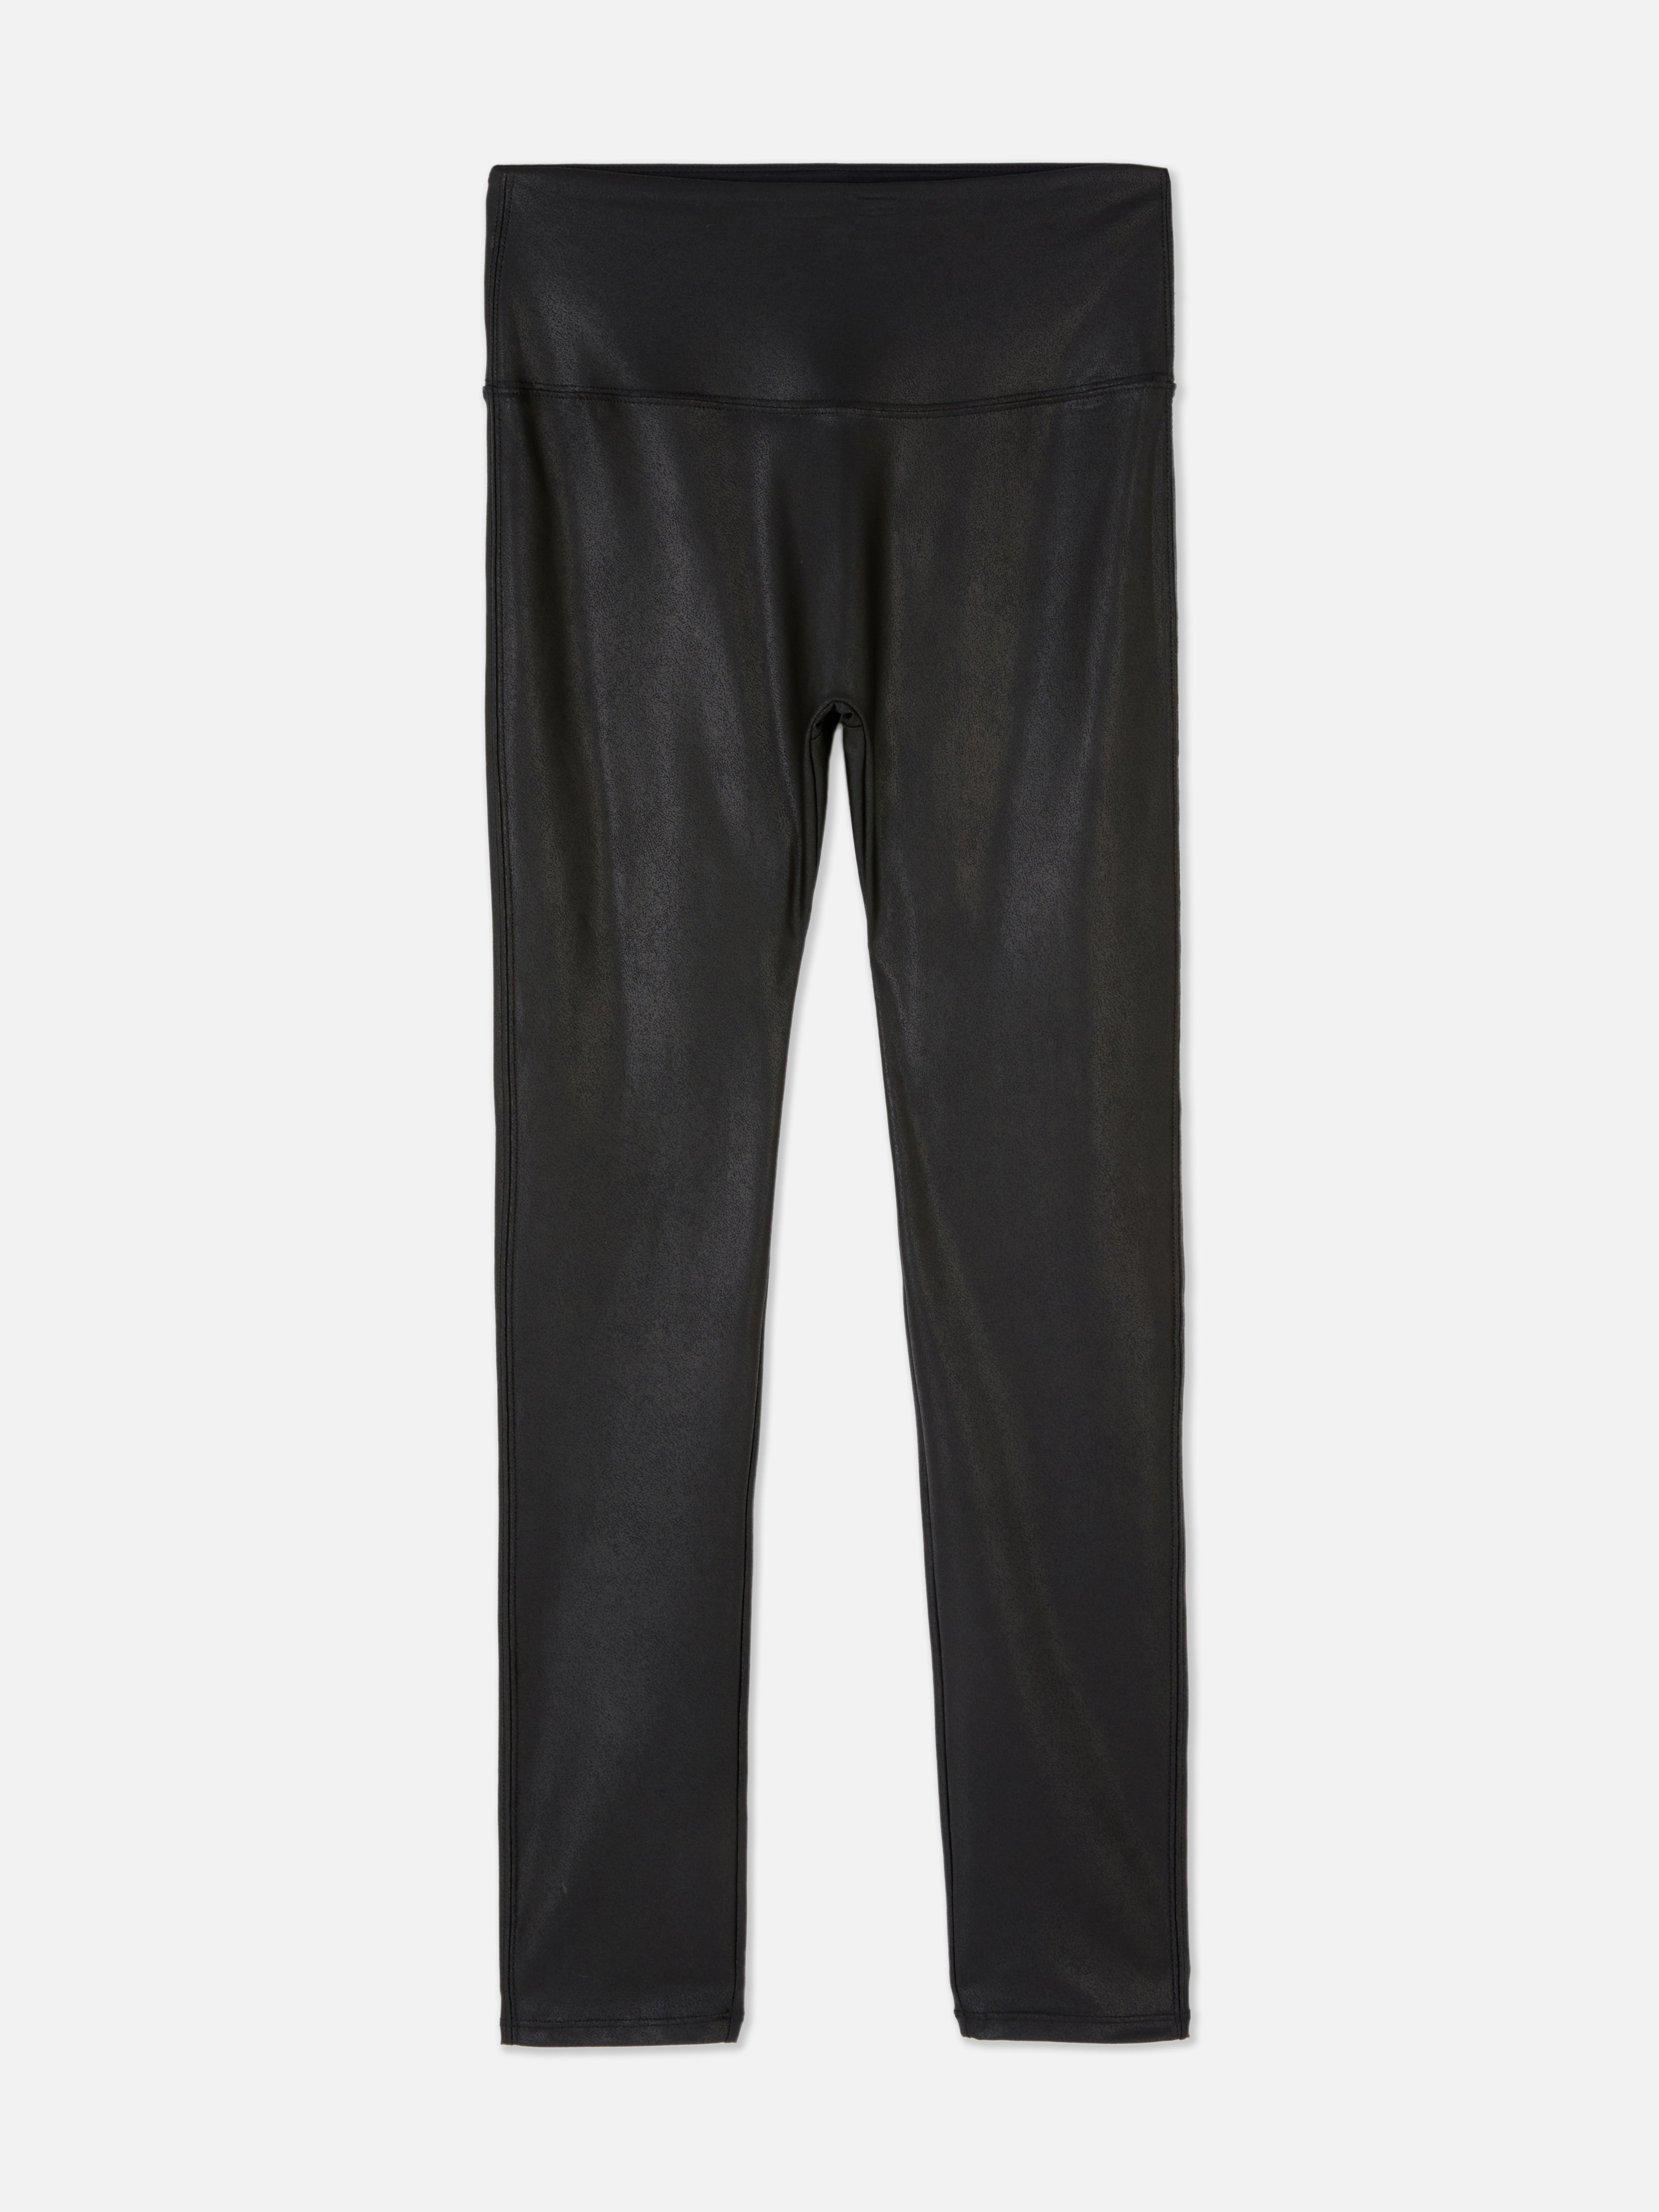 Primark black leggings size medium